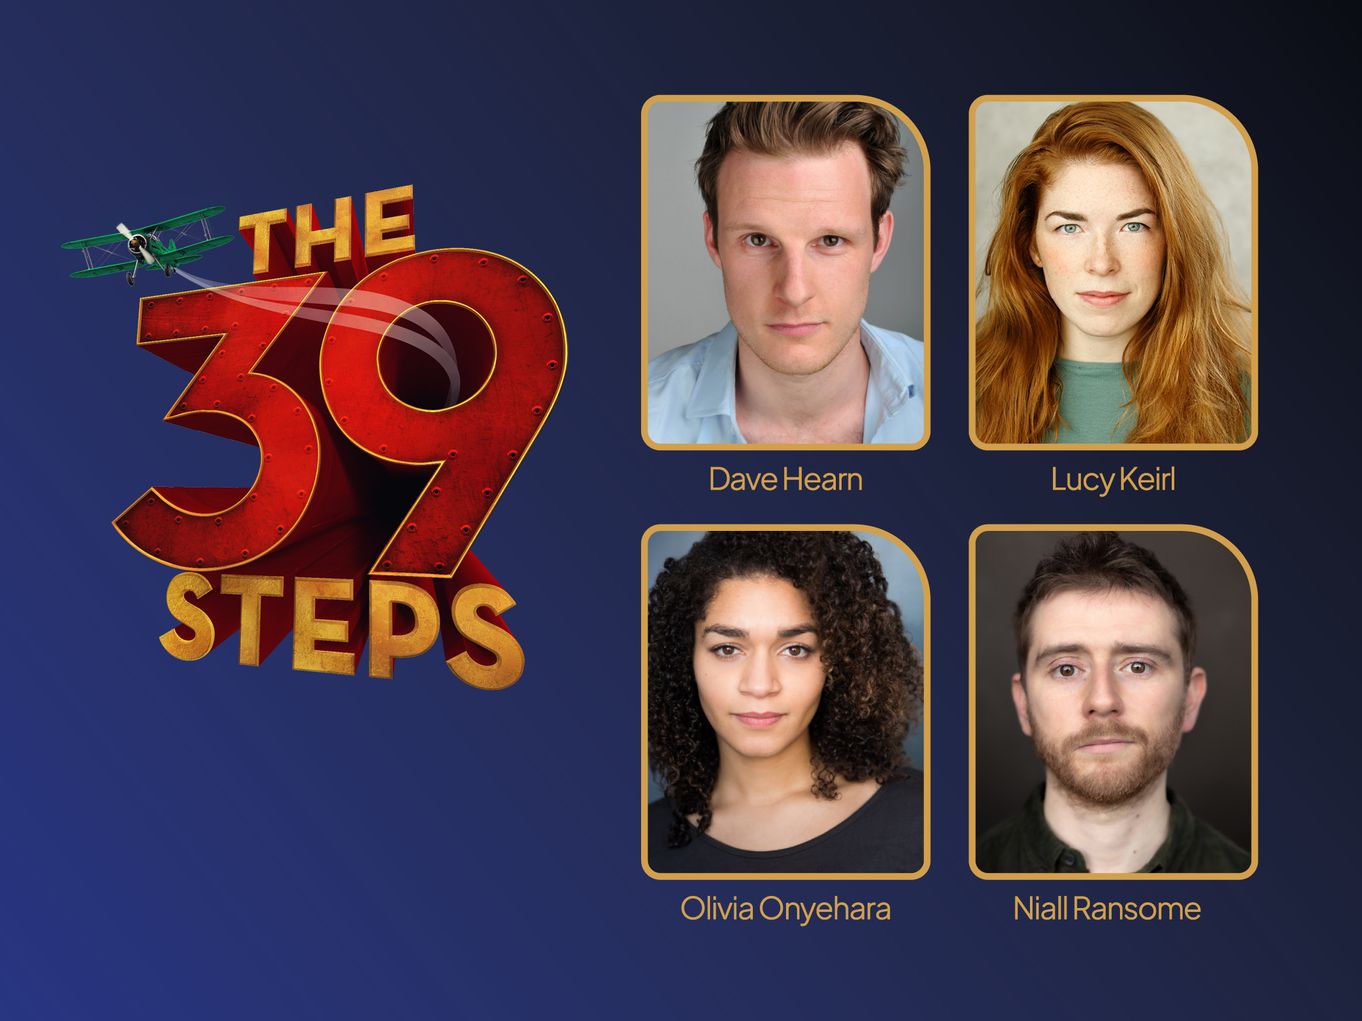 39 Steps main campaign image alongside headshots of the cast